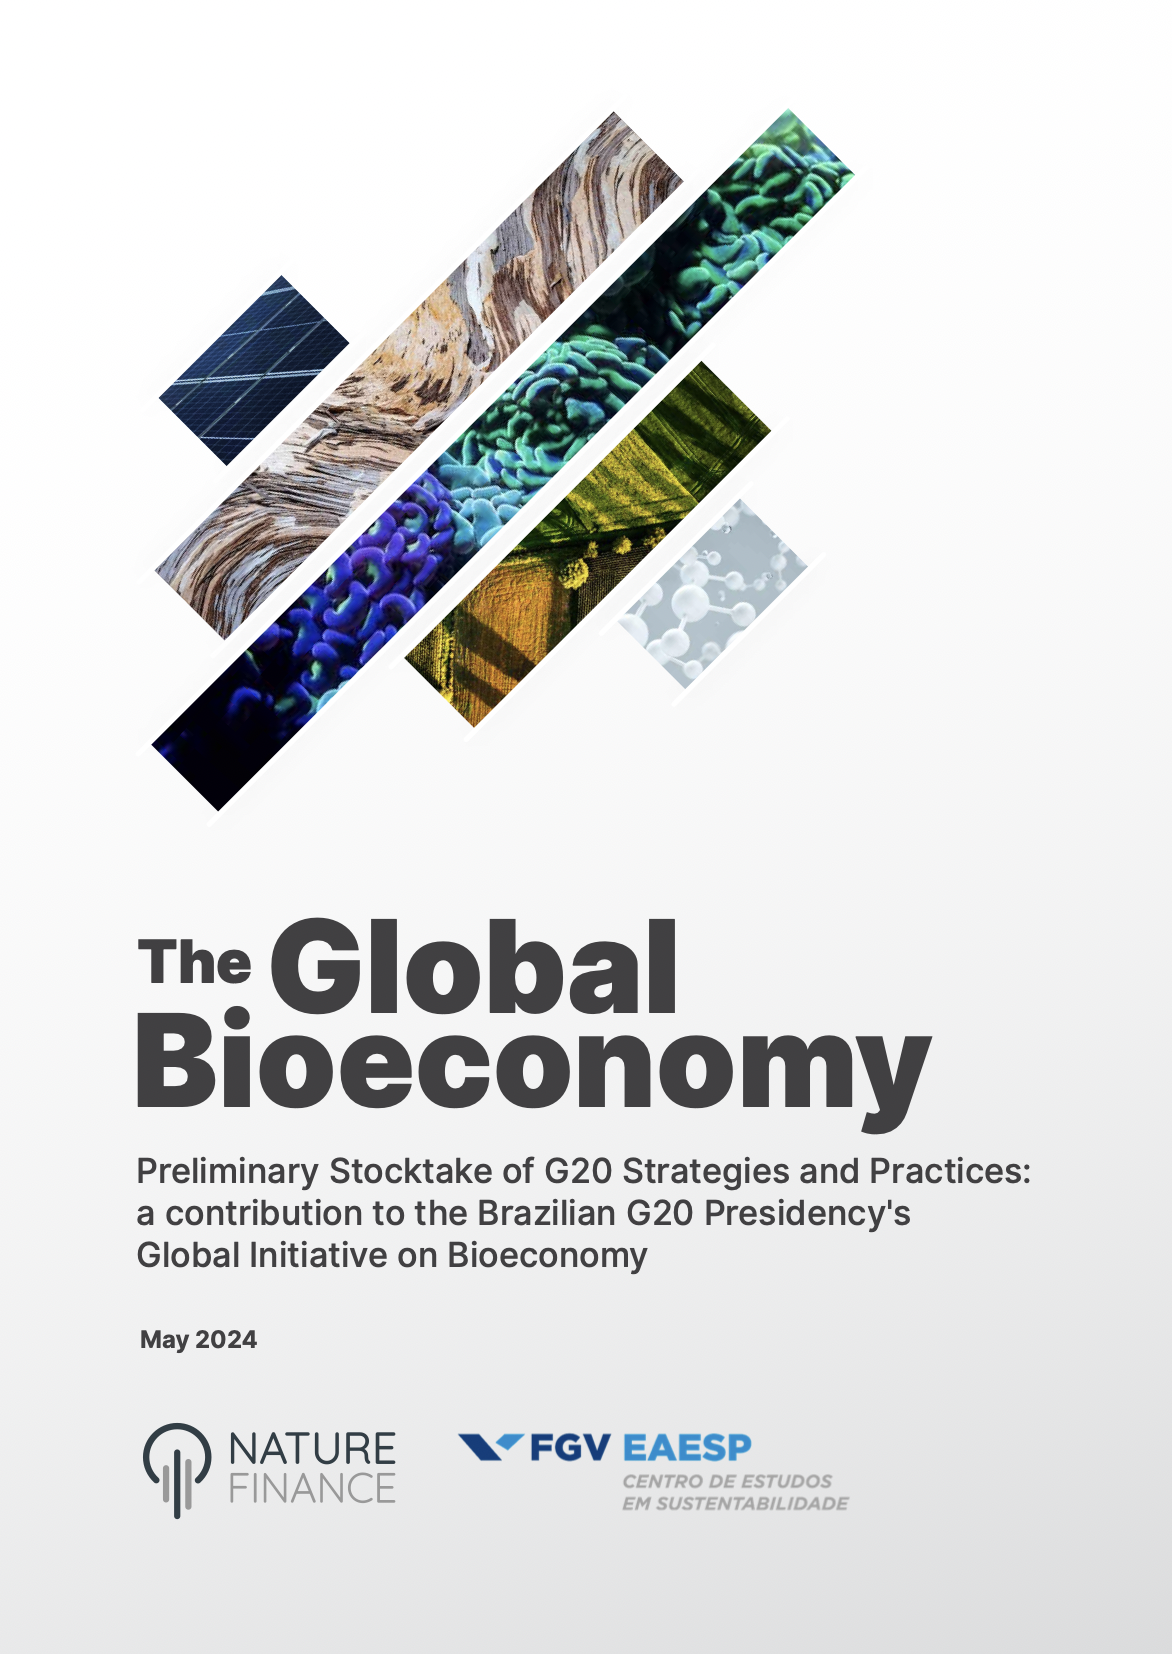 Caminhos da bioeconomia: Contribuindo para o G20 - Principais conclusões